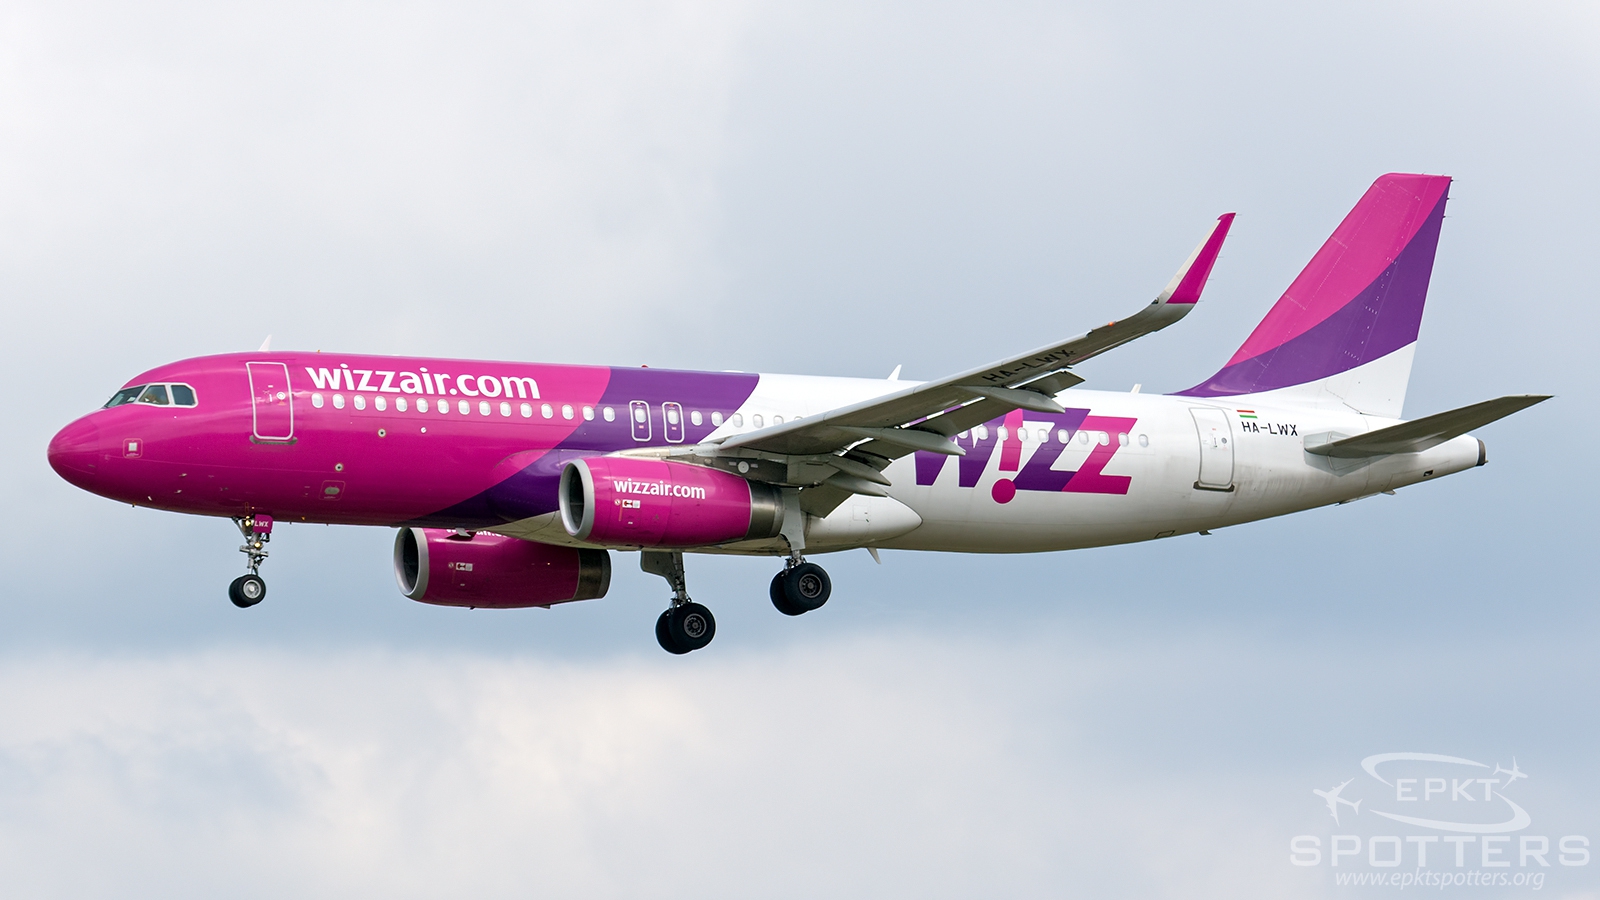 HA-LWX - Airbus A320 -232(WL) (Wizz Air) / Pyrzowice - Katowice Poland [EPKT/KTW]